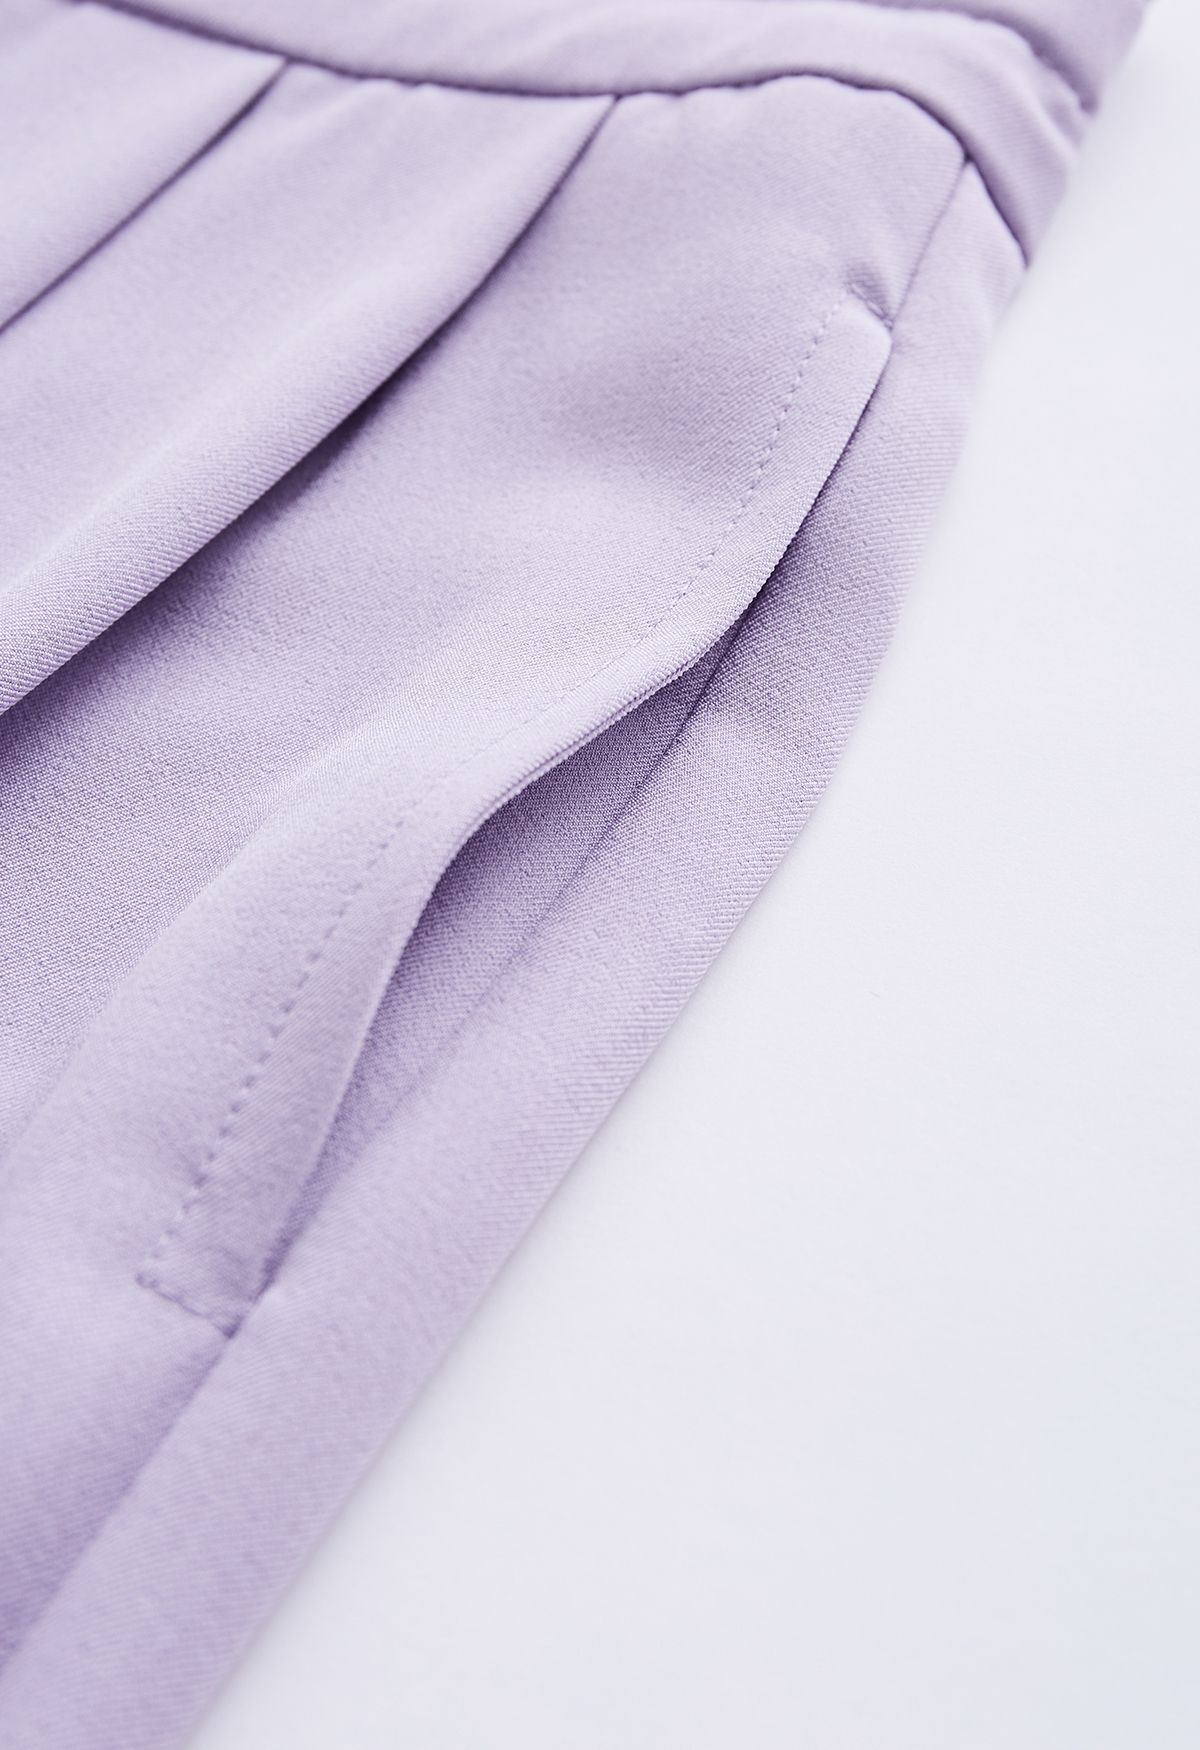 Pantalones de pernera ancha con cordón en la cintura con detalle plisado en lila